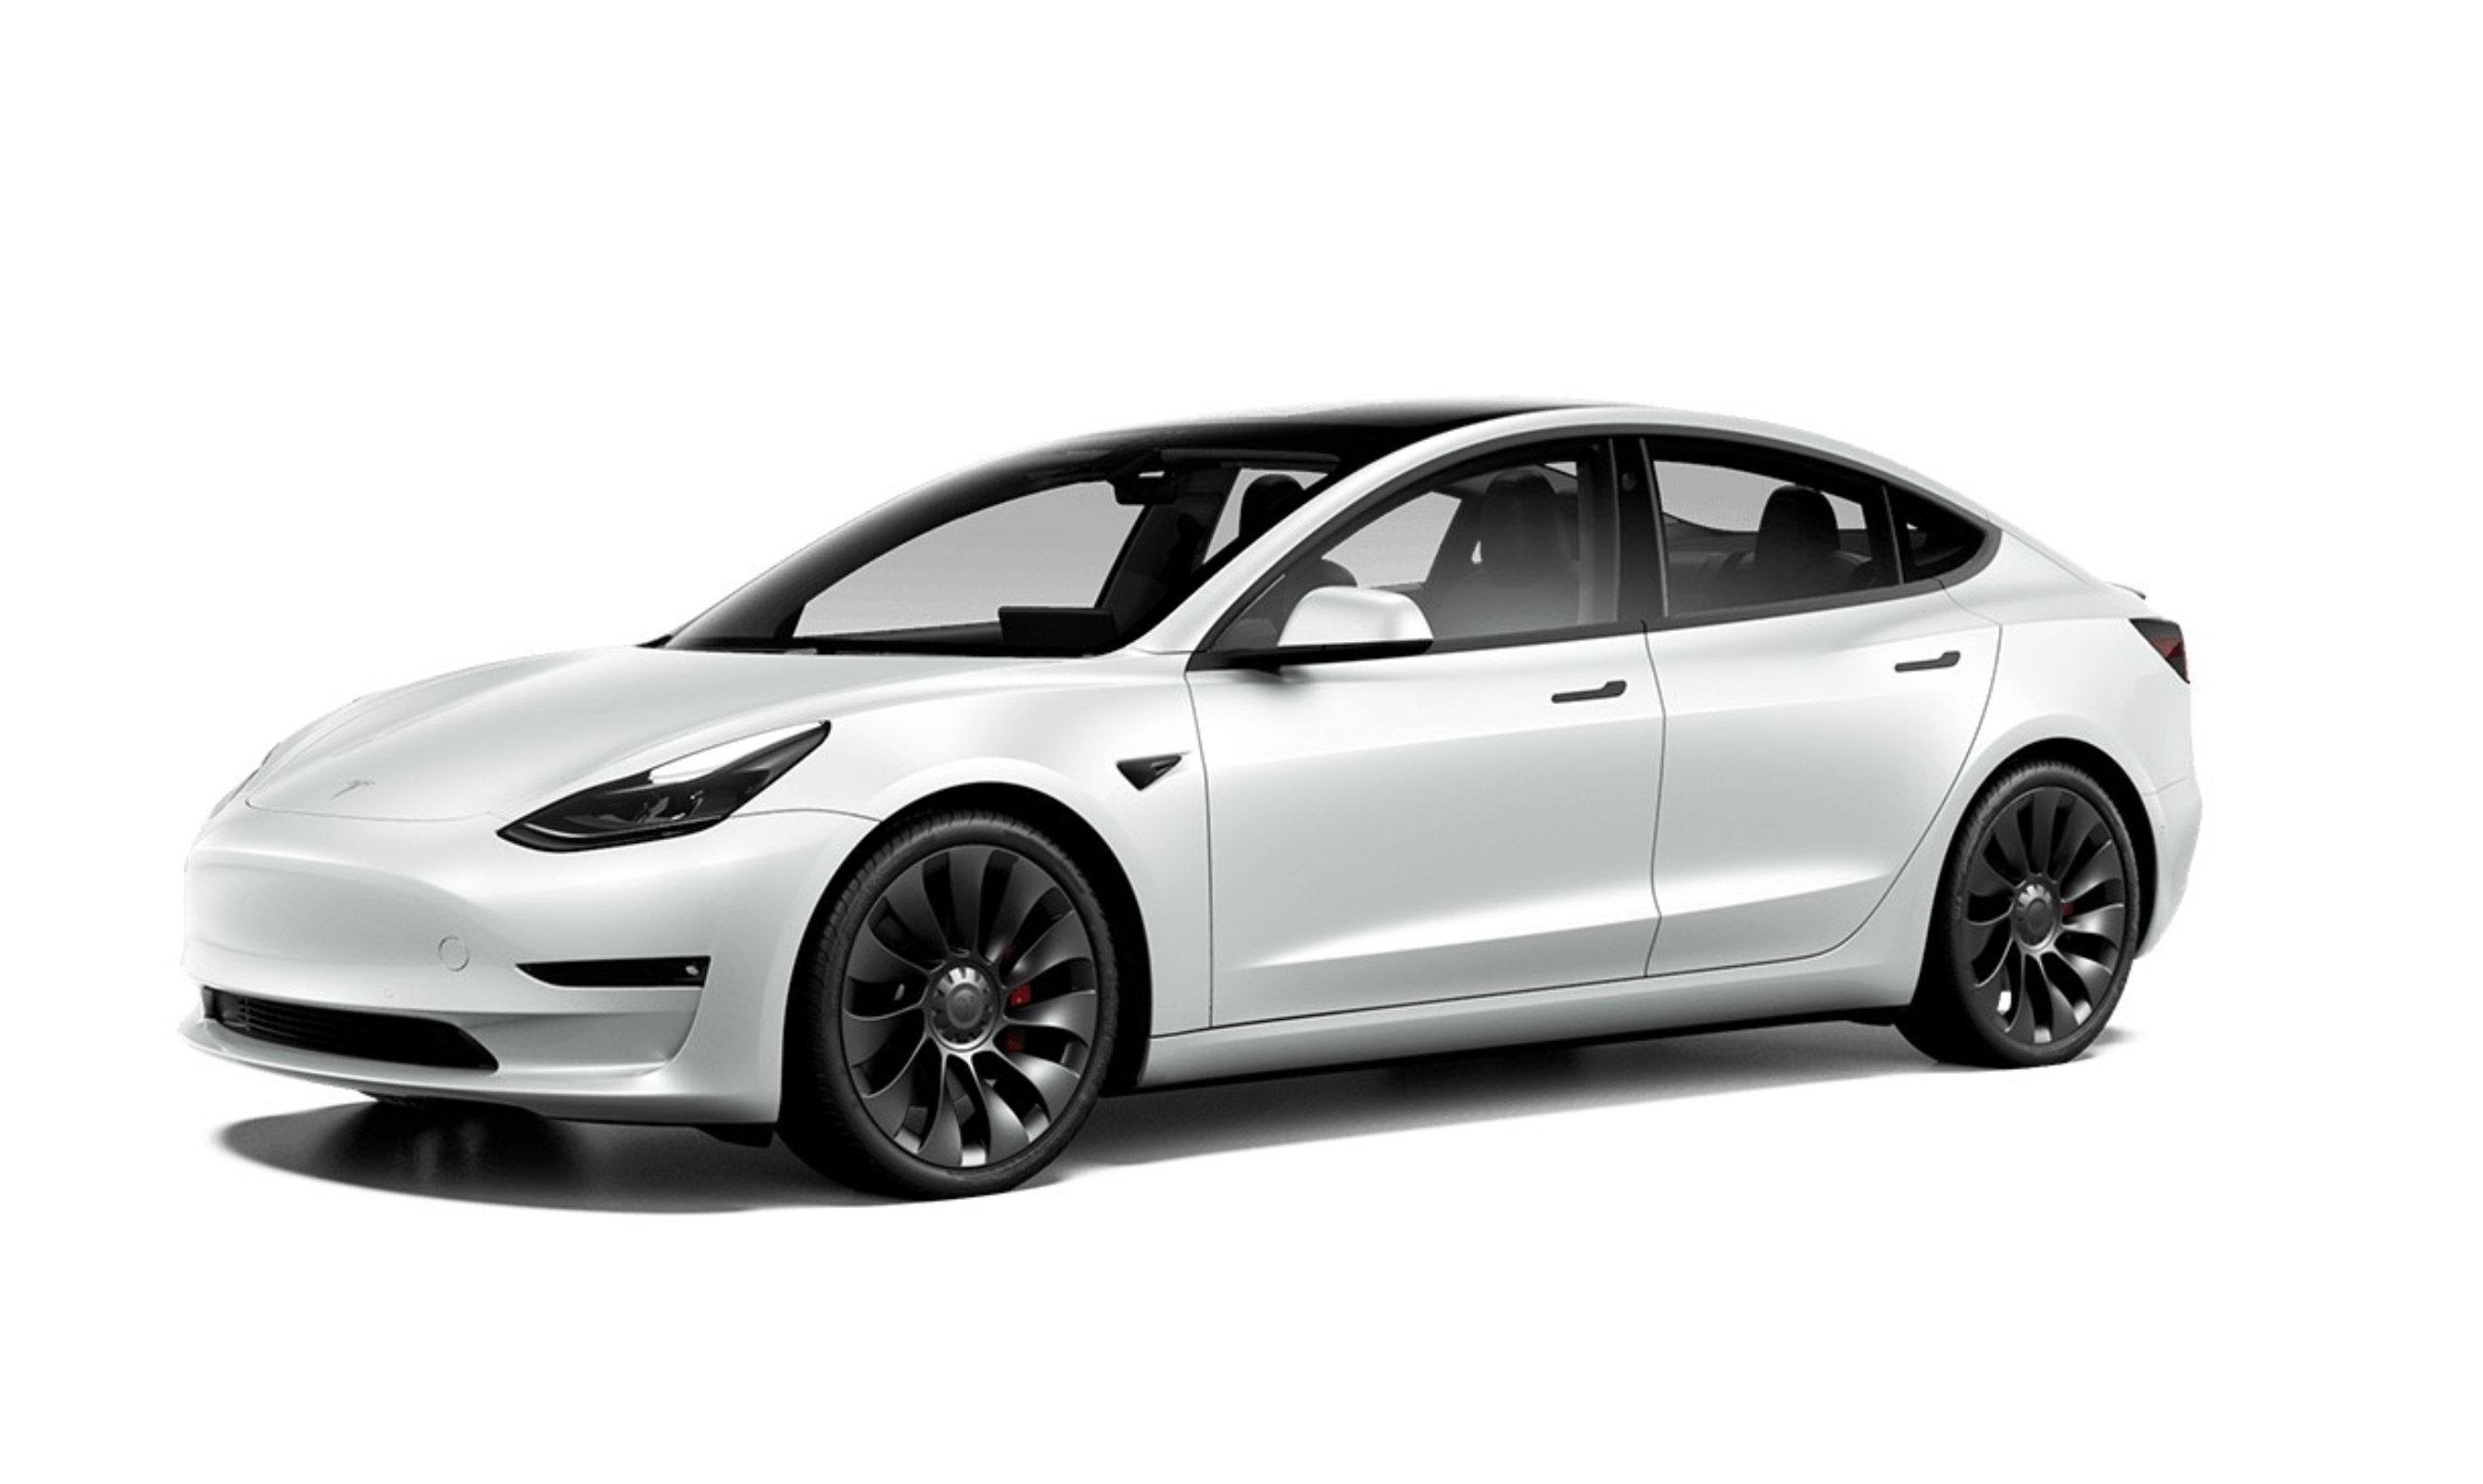 Tesla-Elektroautos zeigen beim Blinken bald Seiten-Bilder >